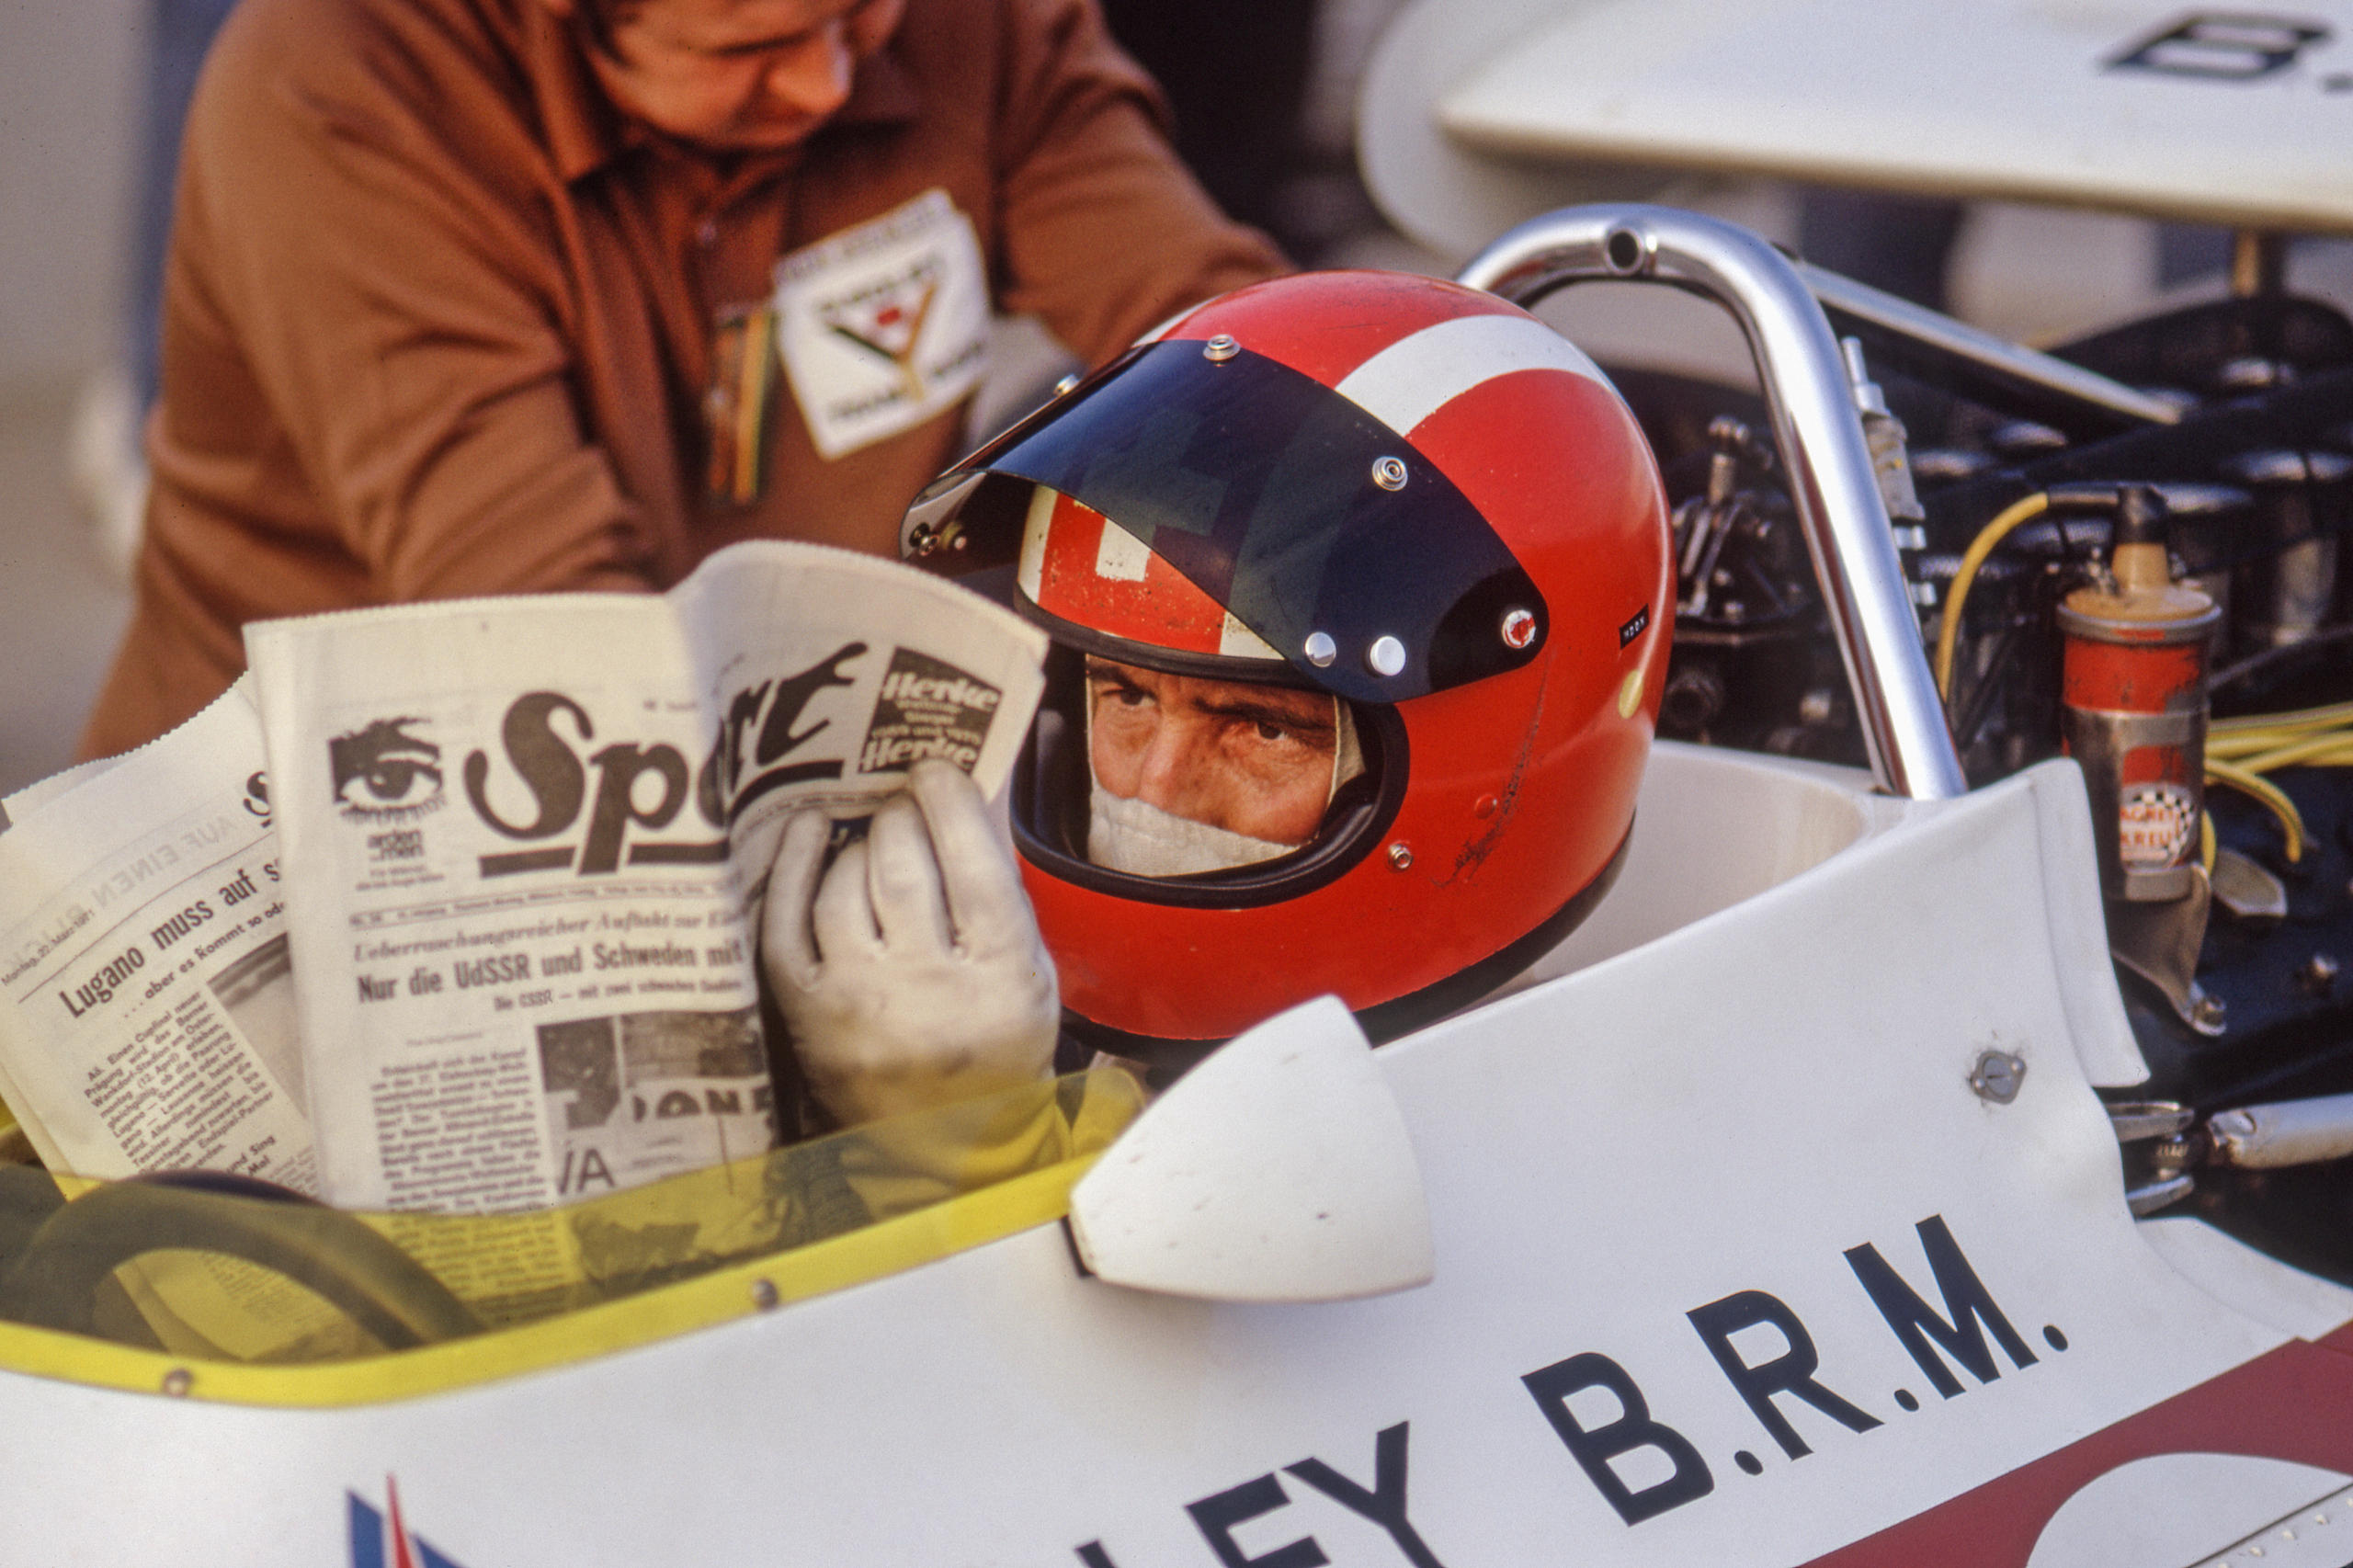 Pilote de course lisant un journal dans son cockpit.